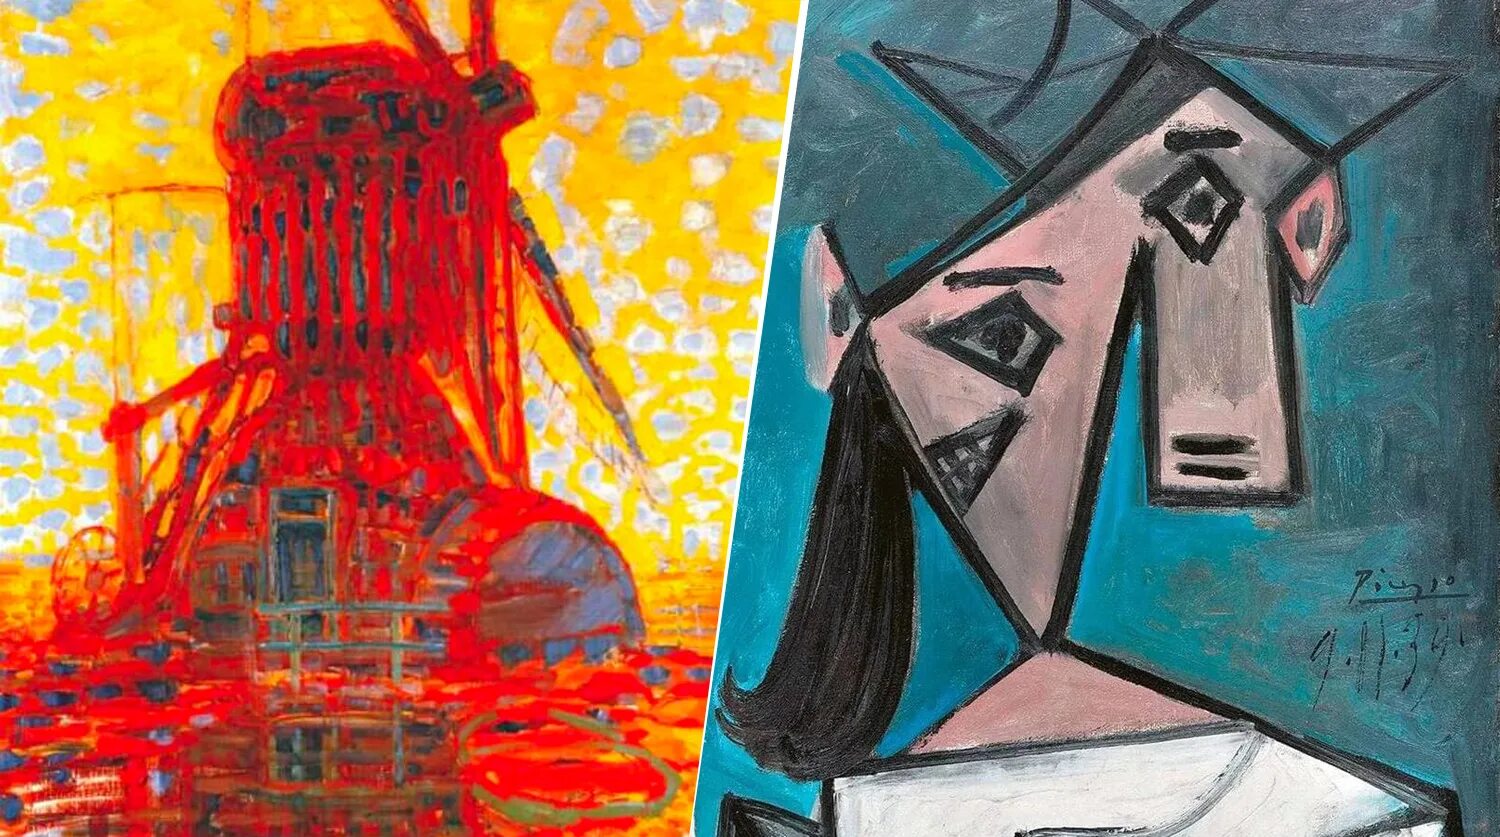 Мондриан ветряная мельница. Пабло Пикассо женская голова. Пикассо пит Мондриан. Пит Мондриан картины мельницы. Краденные картины